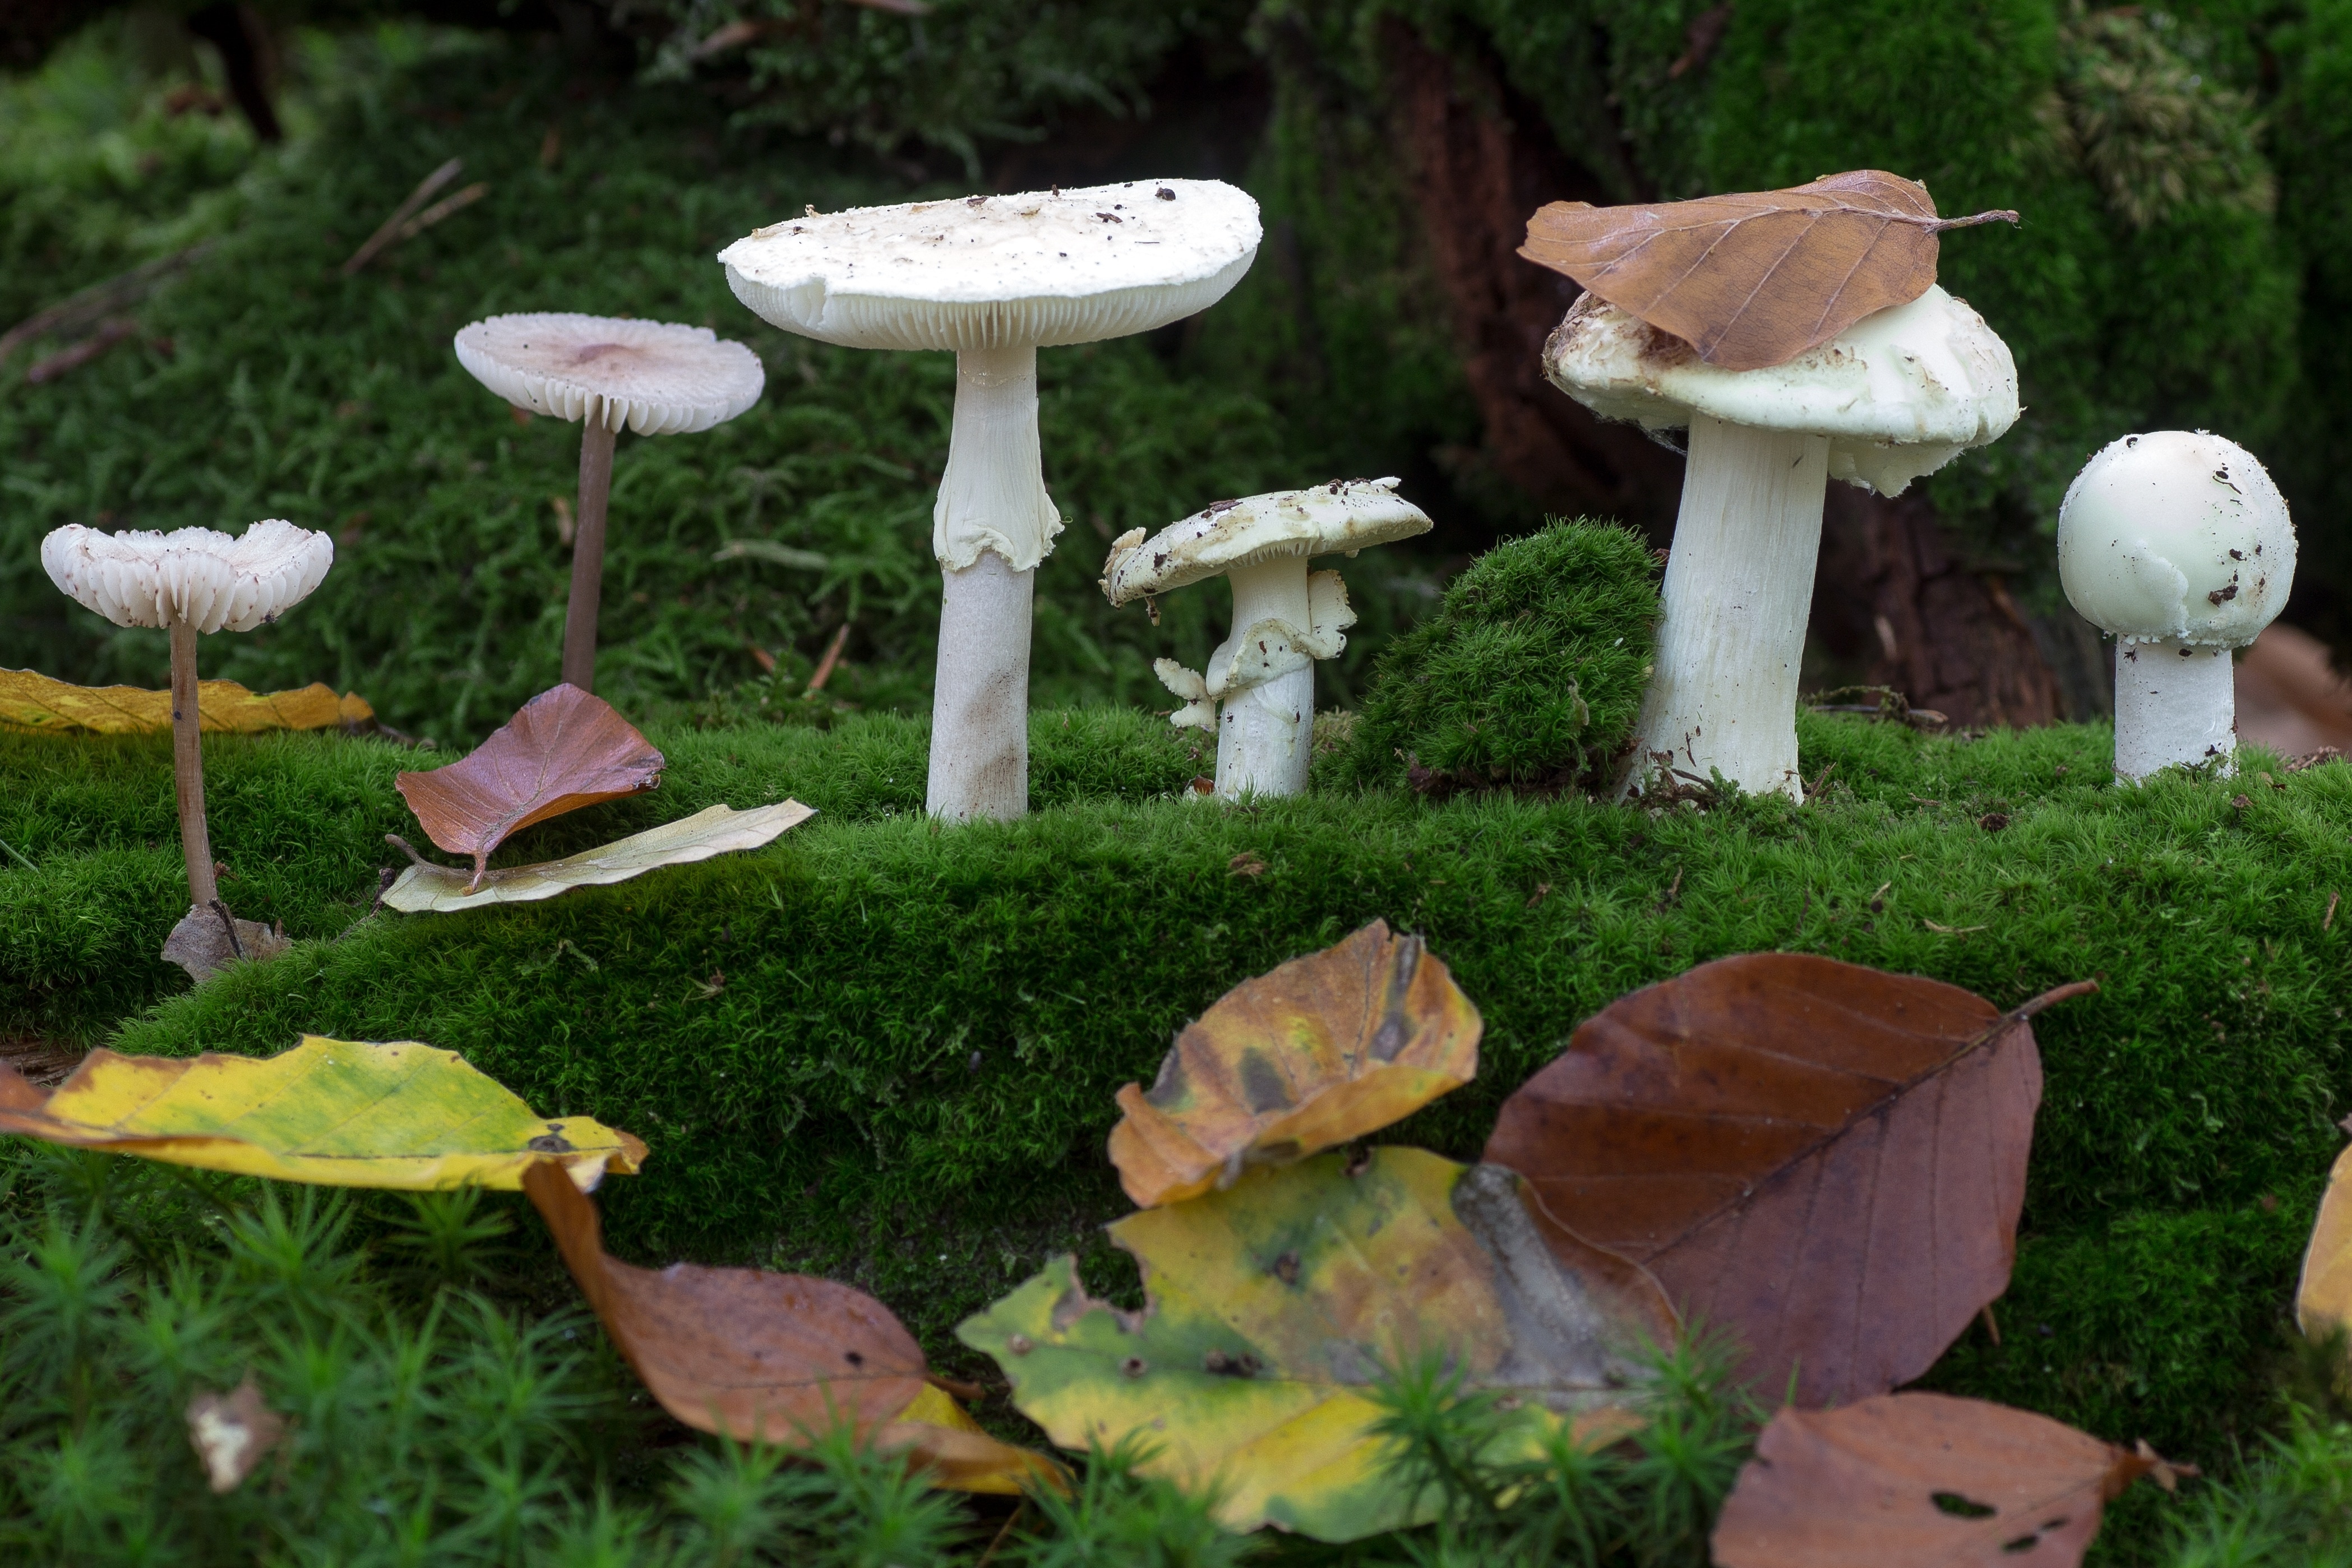 5 white mushrooms